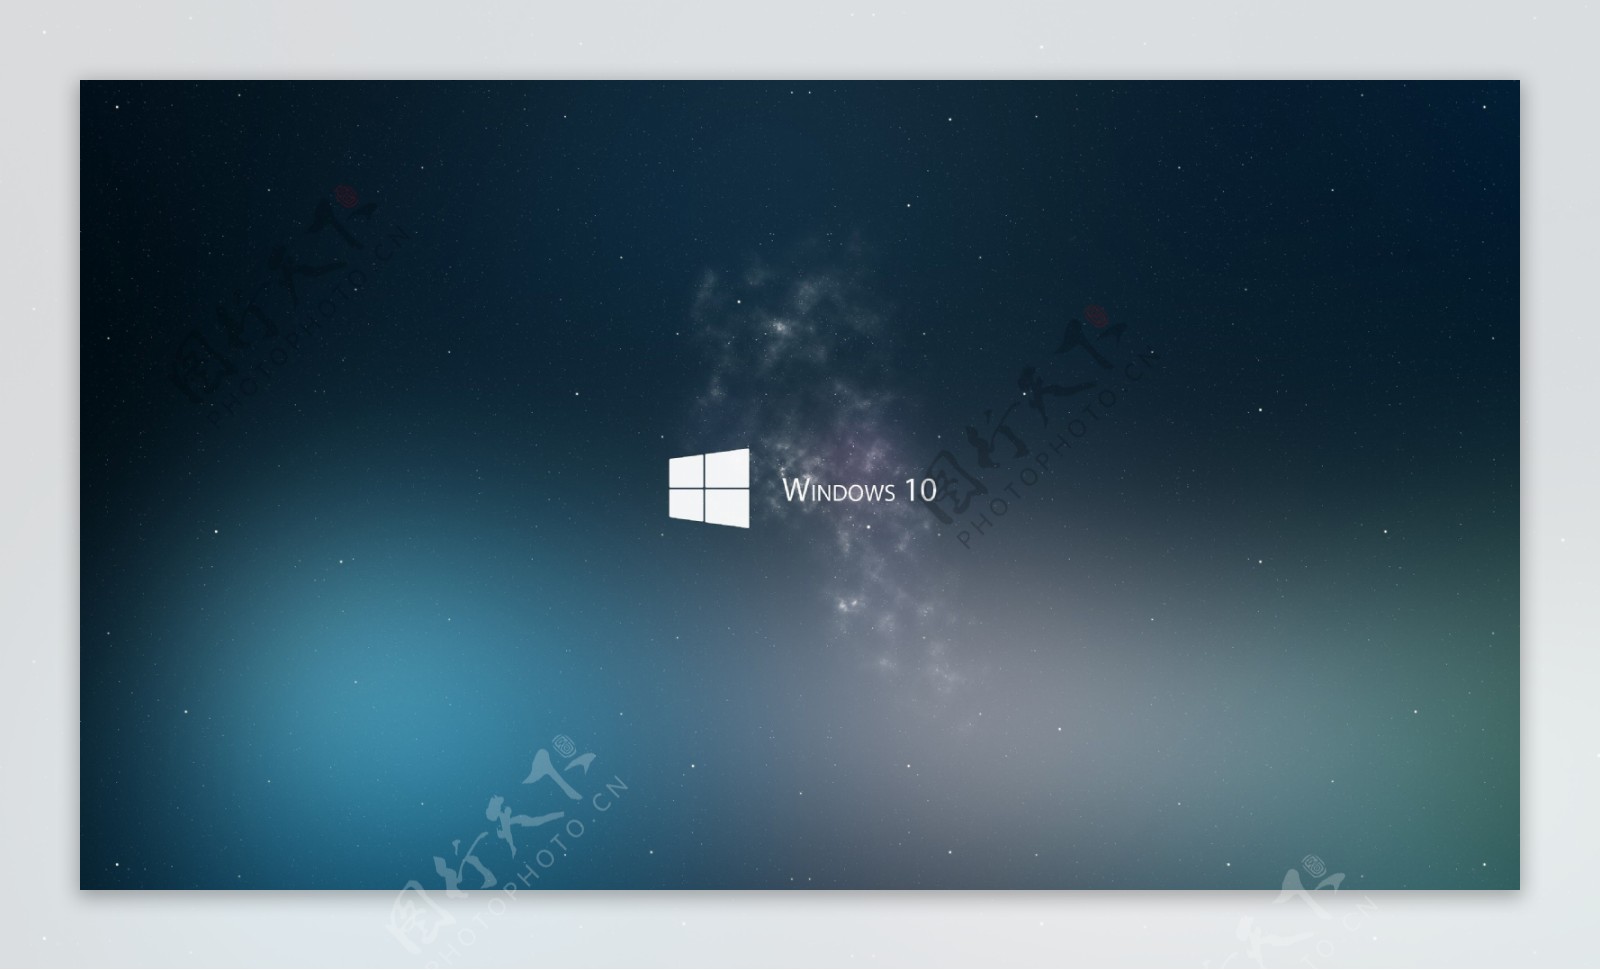 微软Windows10壁纸